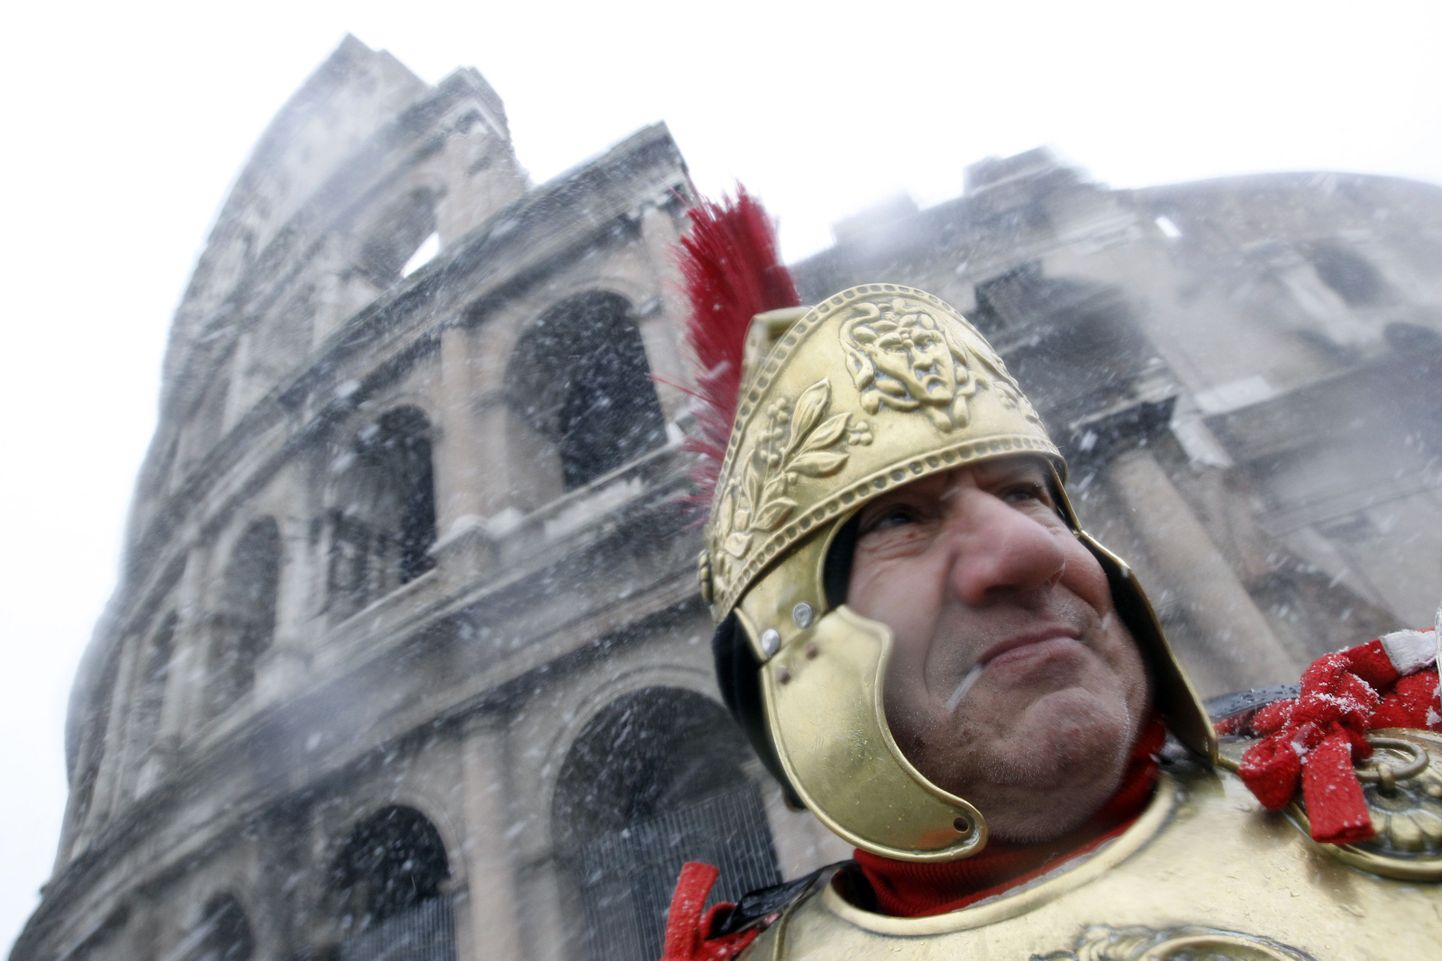 Rooma tsentuurioniks riietunud mees seismas lumesajus Colosseumi ees.